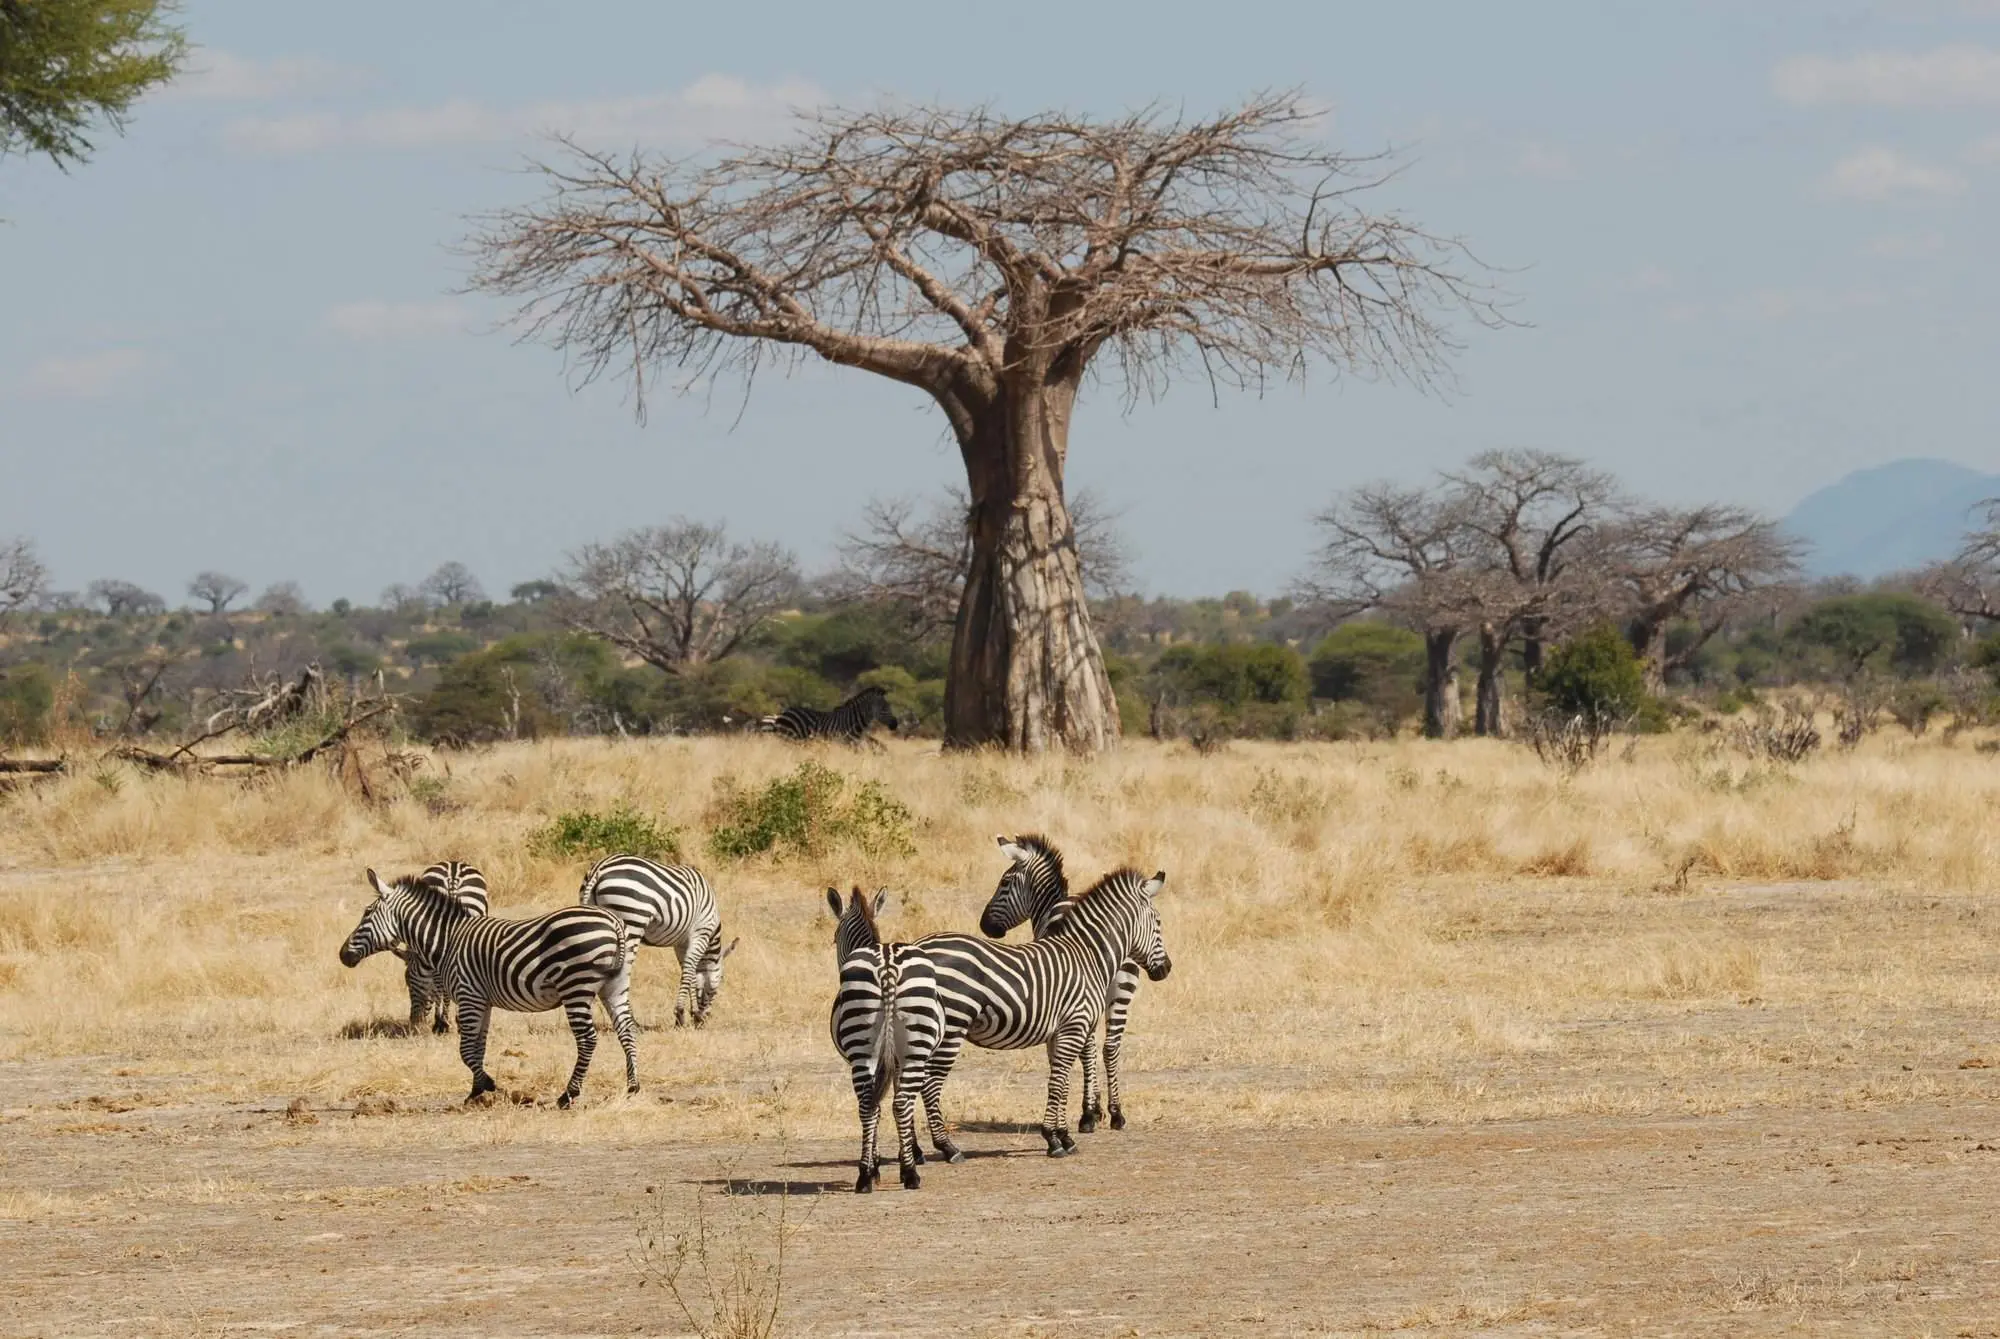 Saving money on Tanzania budget safaris